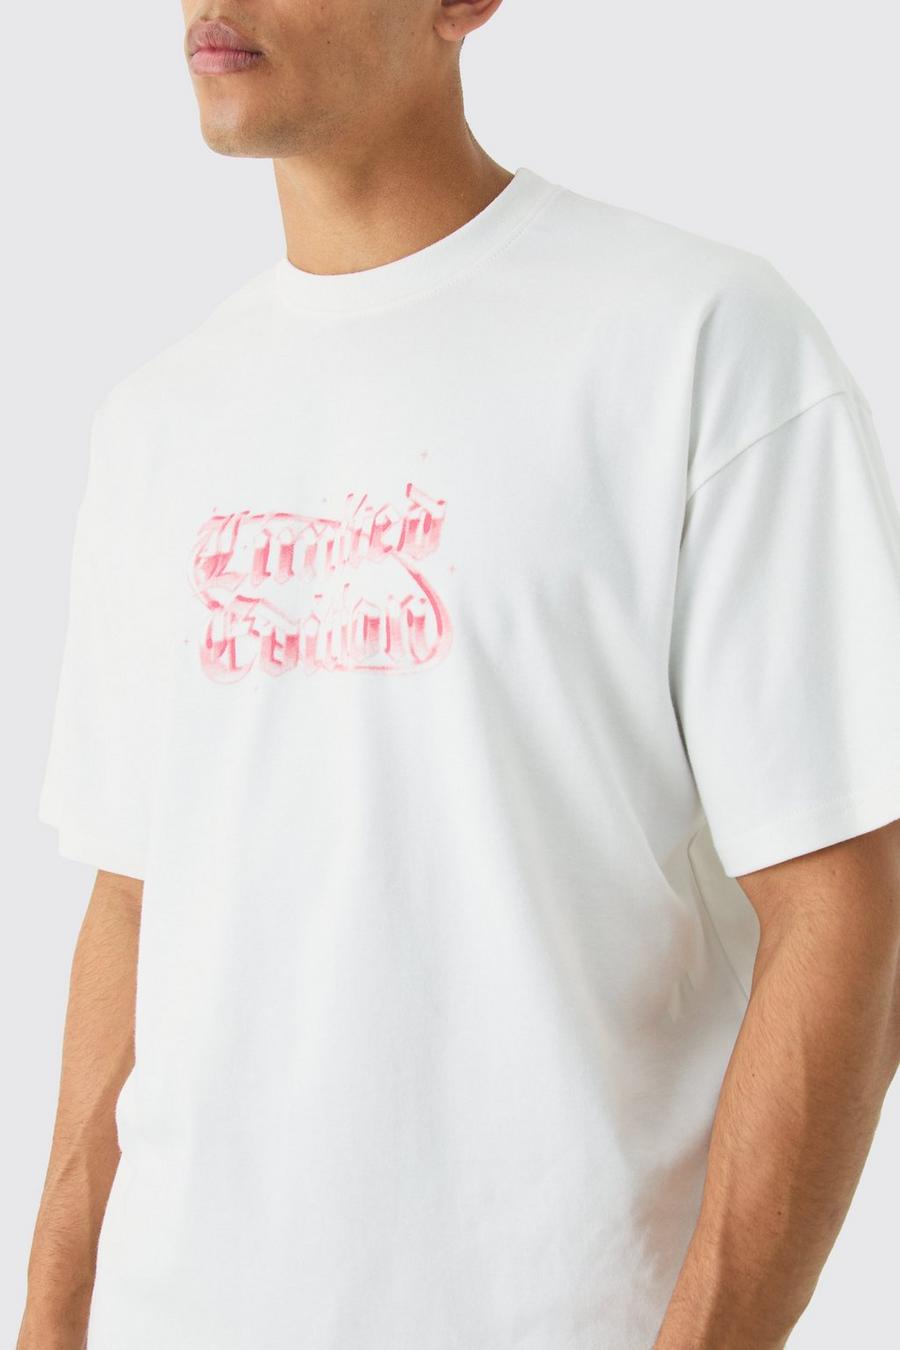 T-shirt oversize à surpiqûres - Limited Edition, White